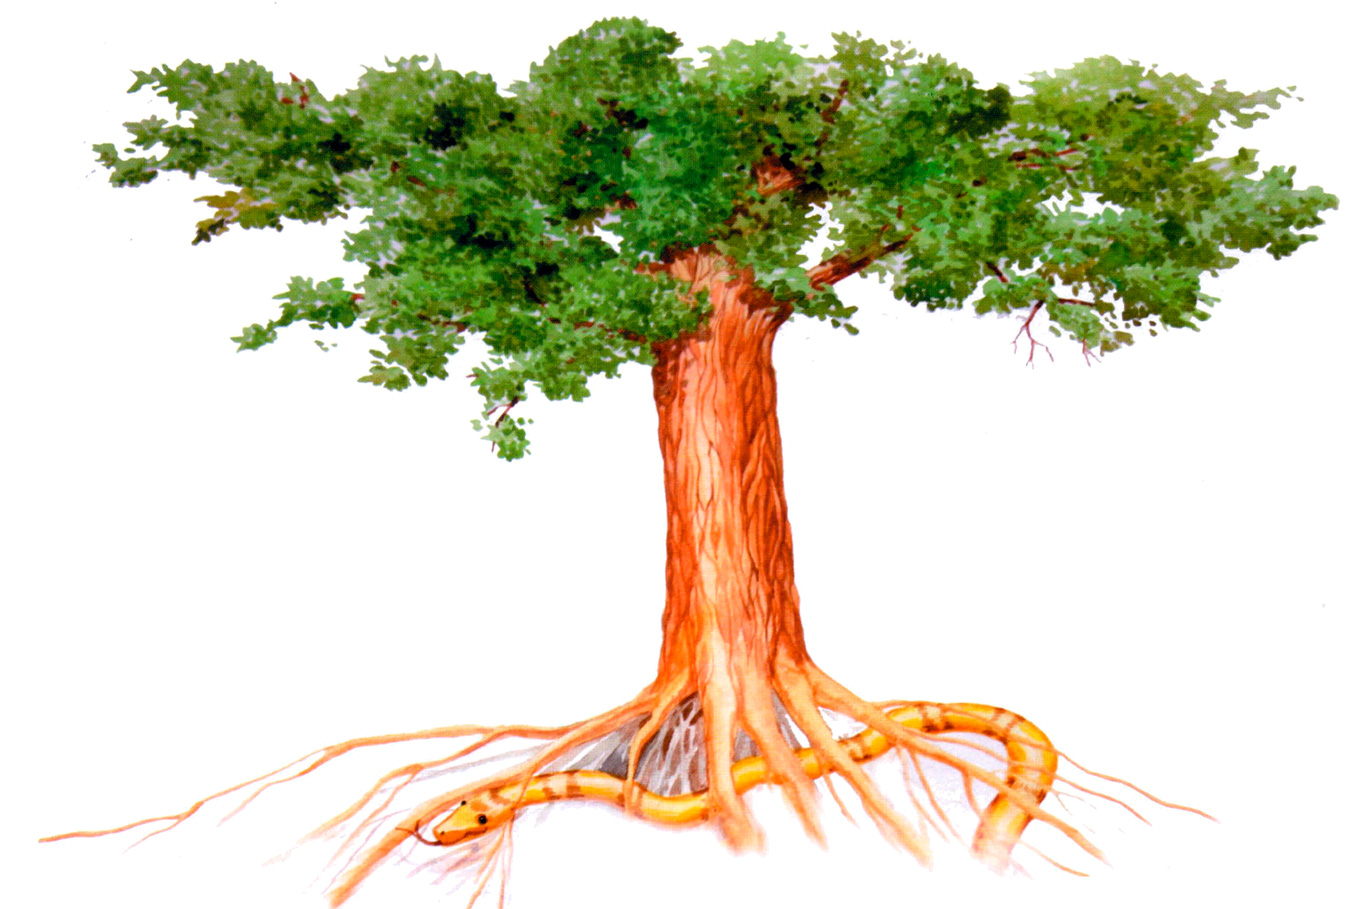 На дереве жизни символизируют плоды и «дерево жизни» будет посажено в парке мира и согласия в Нур-Султане. А как же Папа?